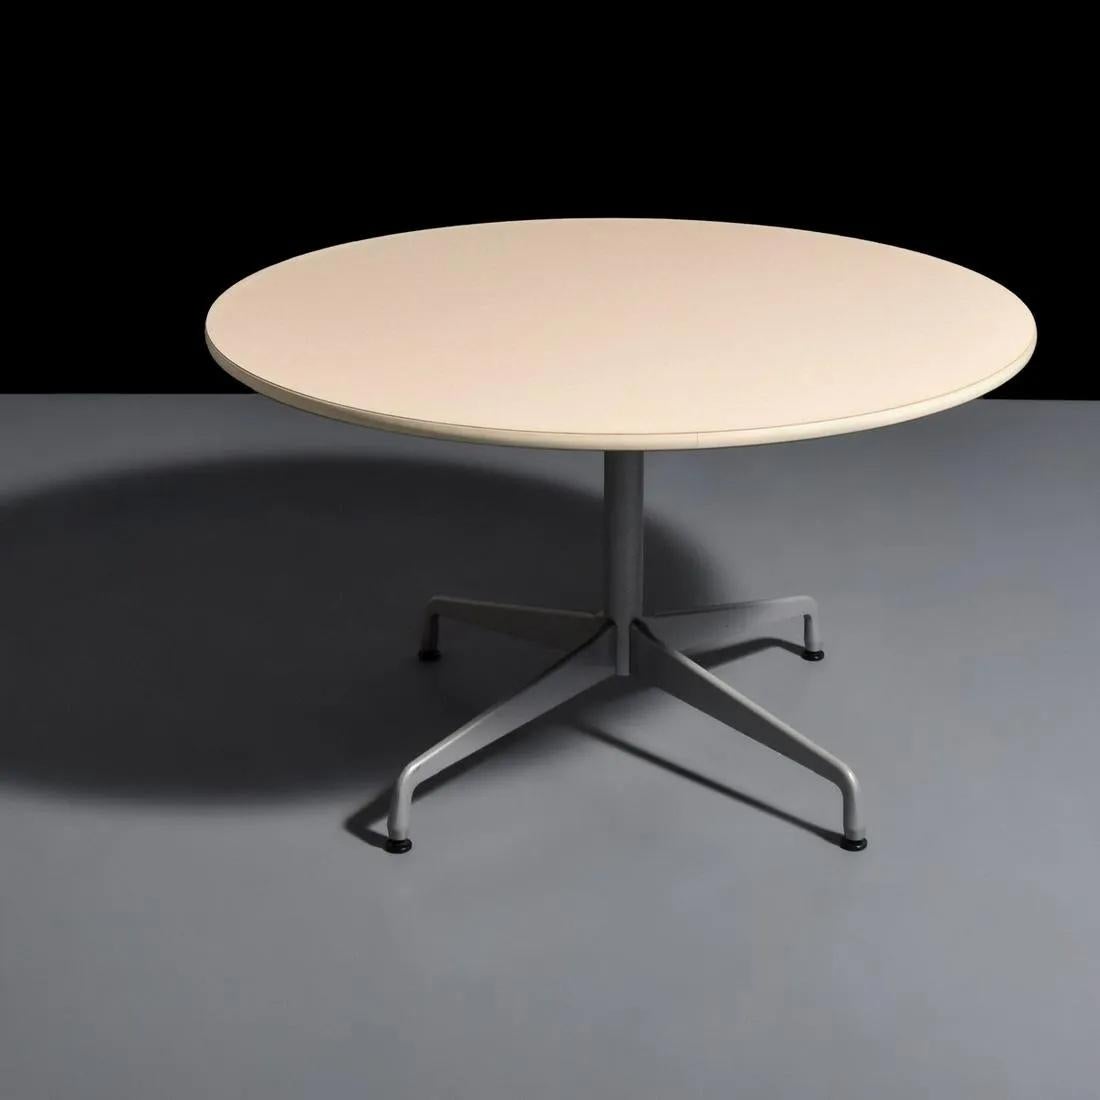 Une table ronde intemporelle de salle à manger ou de conférence conçue par Ray et Charles Eames pour Herman Miller. La table est dotée d'un plateau en stratifié blanc avec un motif de grain gris clair reposant sur une base en acier. La base, qui